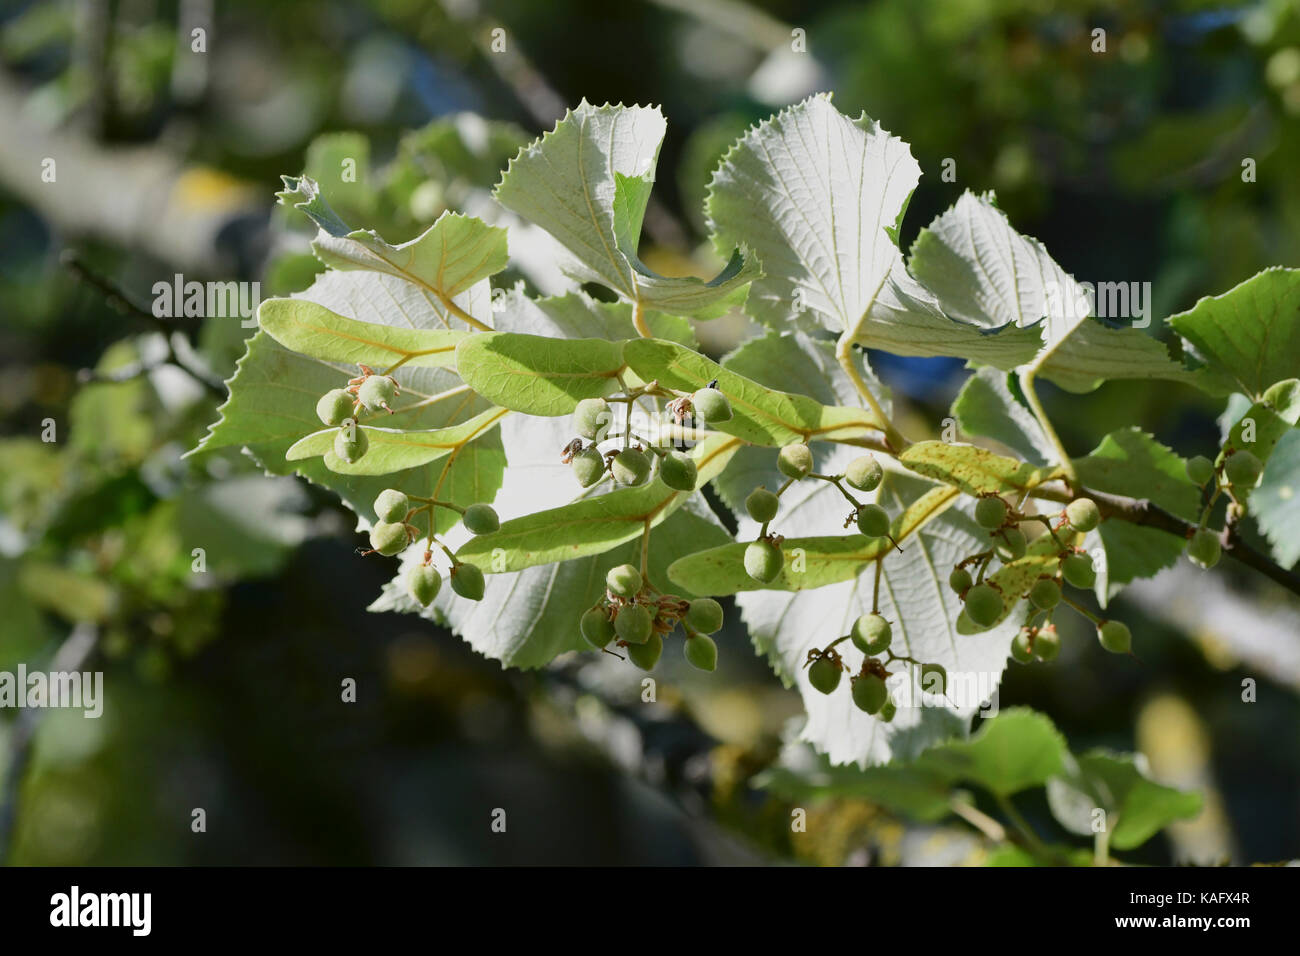 La chaux d'argent, de l'argent Linden (Tilia tomentosa) brindilles avec fruits, face inférieure des feuilles bien visibles Banque D'Images